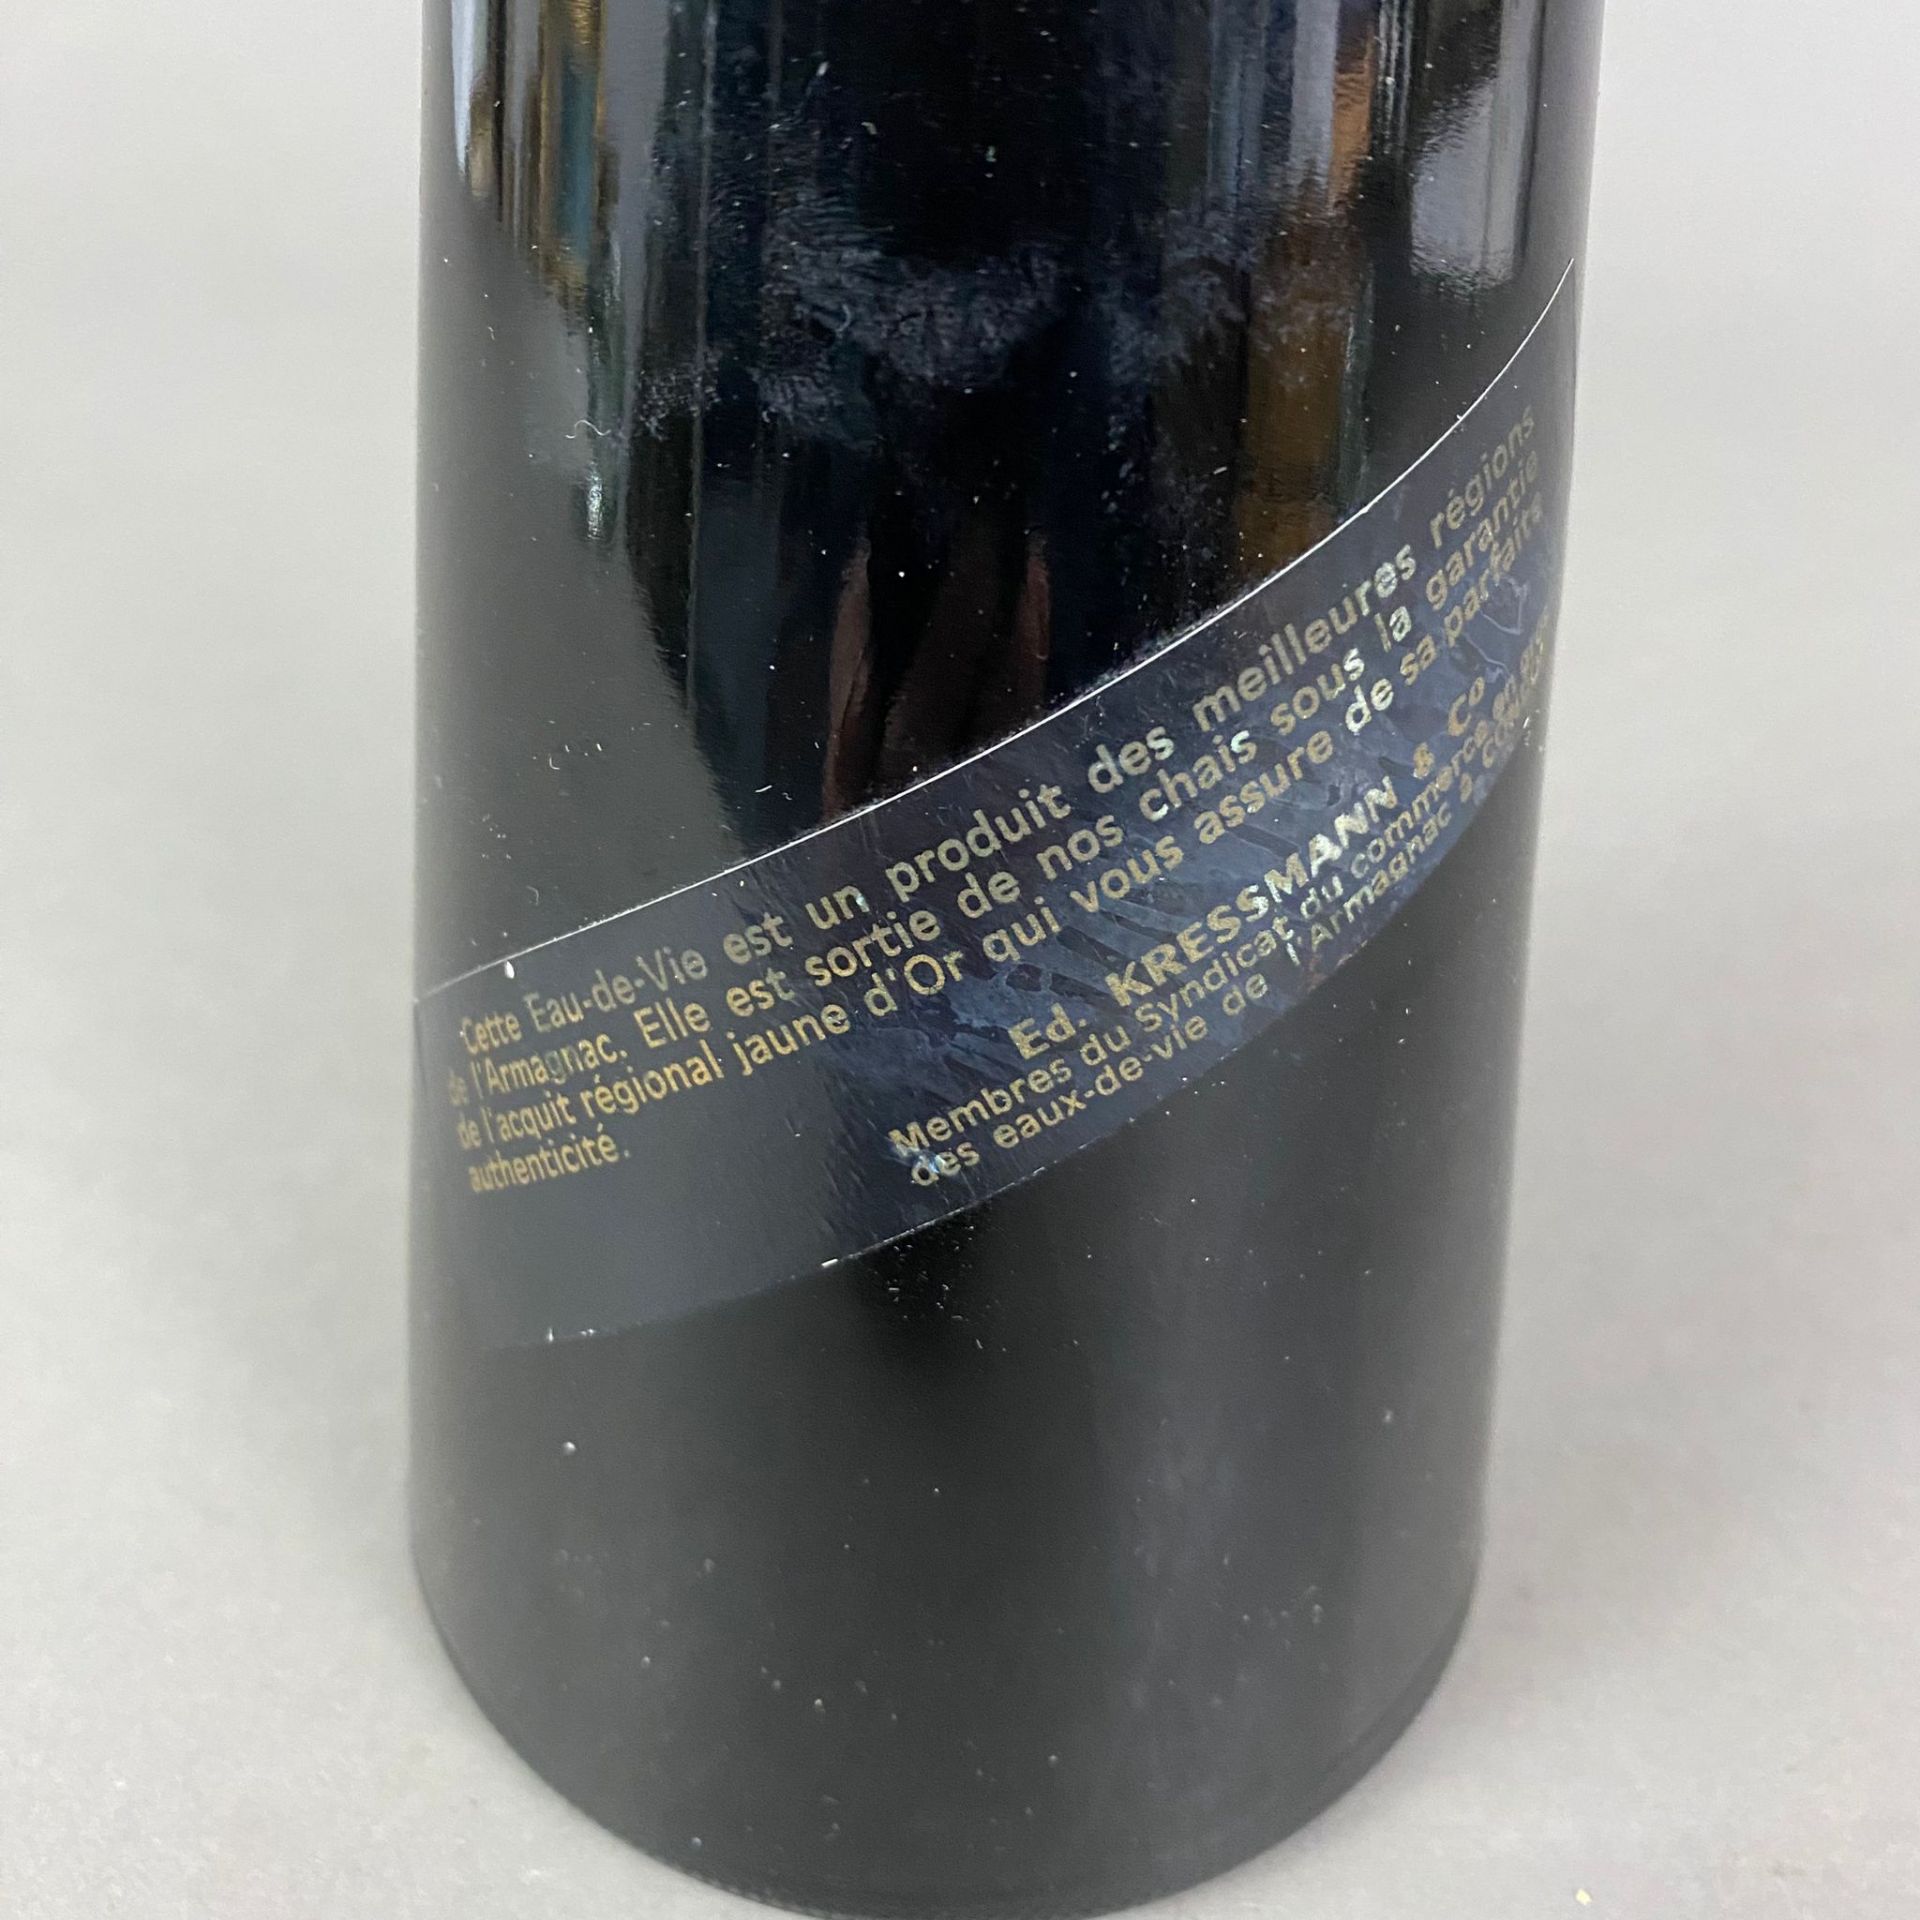 Armagnac - Kressmann 1933, abgefüllt 2000, 70 cl, 40%, Etikett verschmutzt, teilweise unleserlich - Bild 4 aus 4